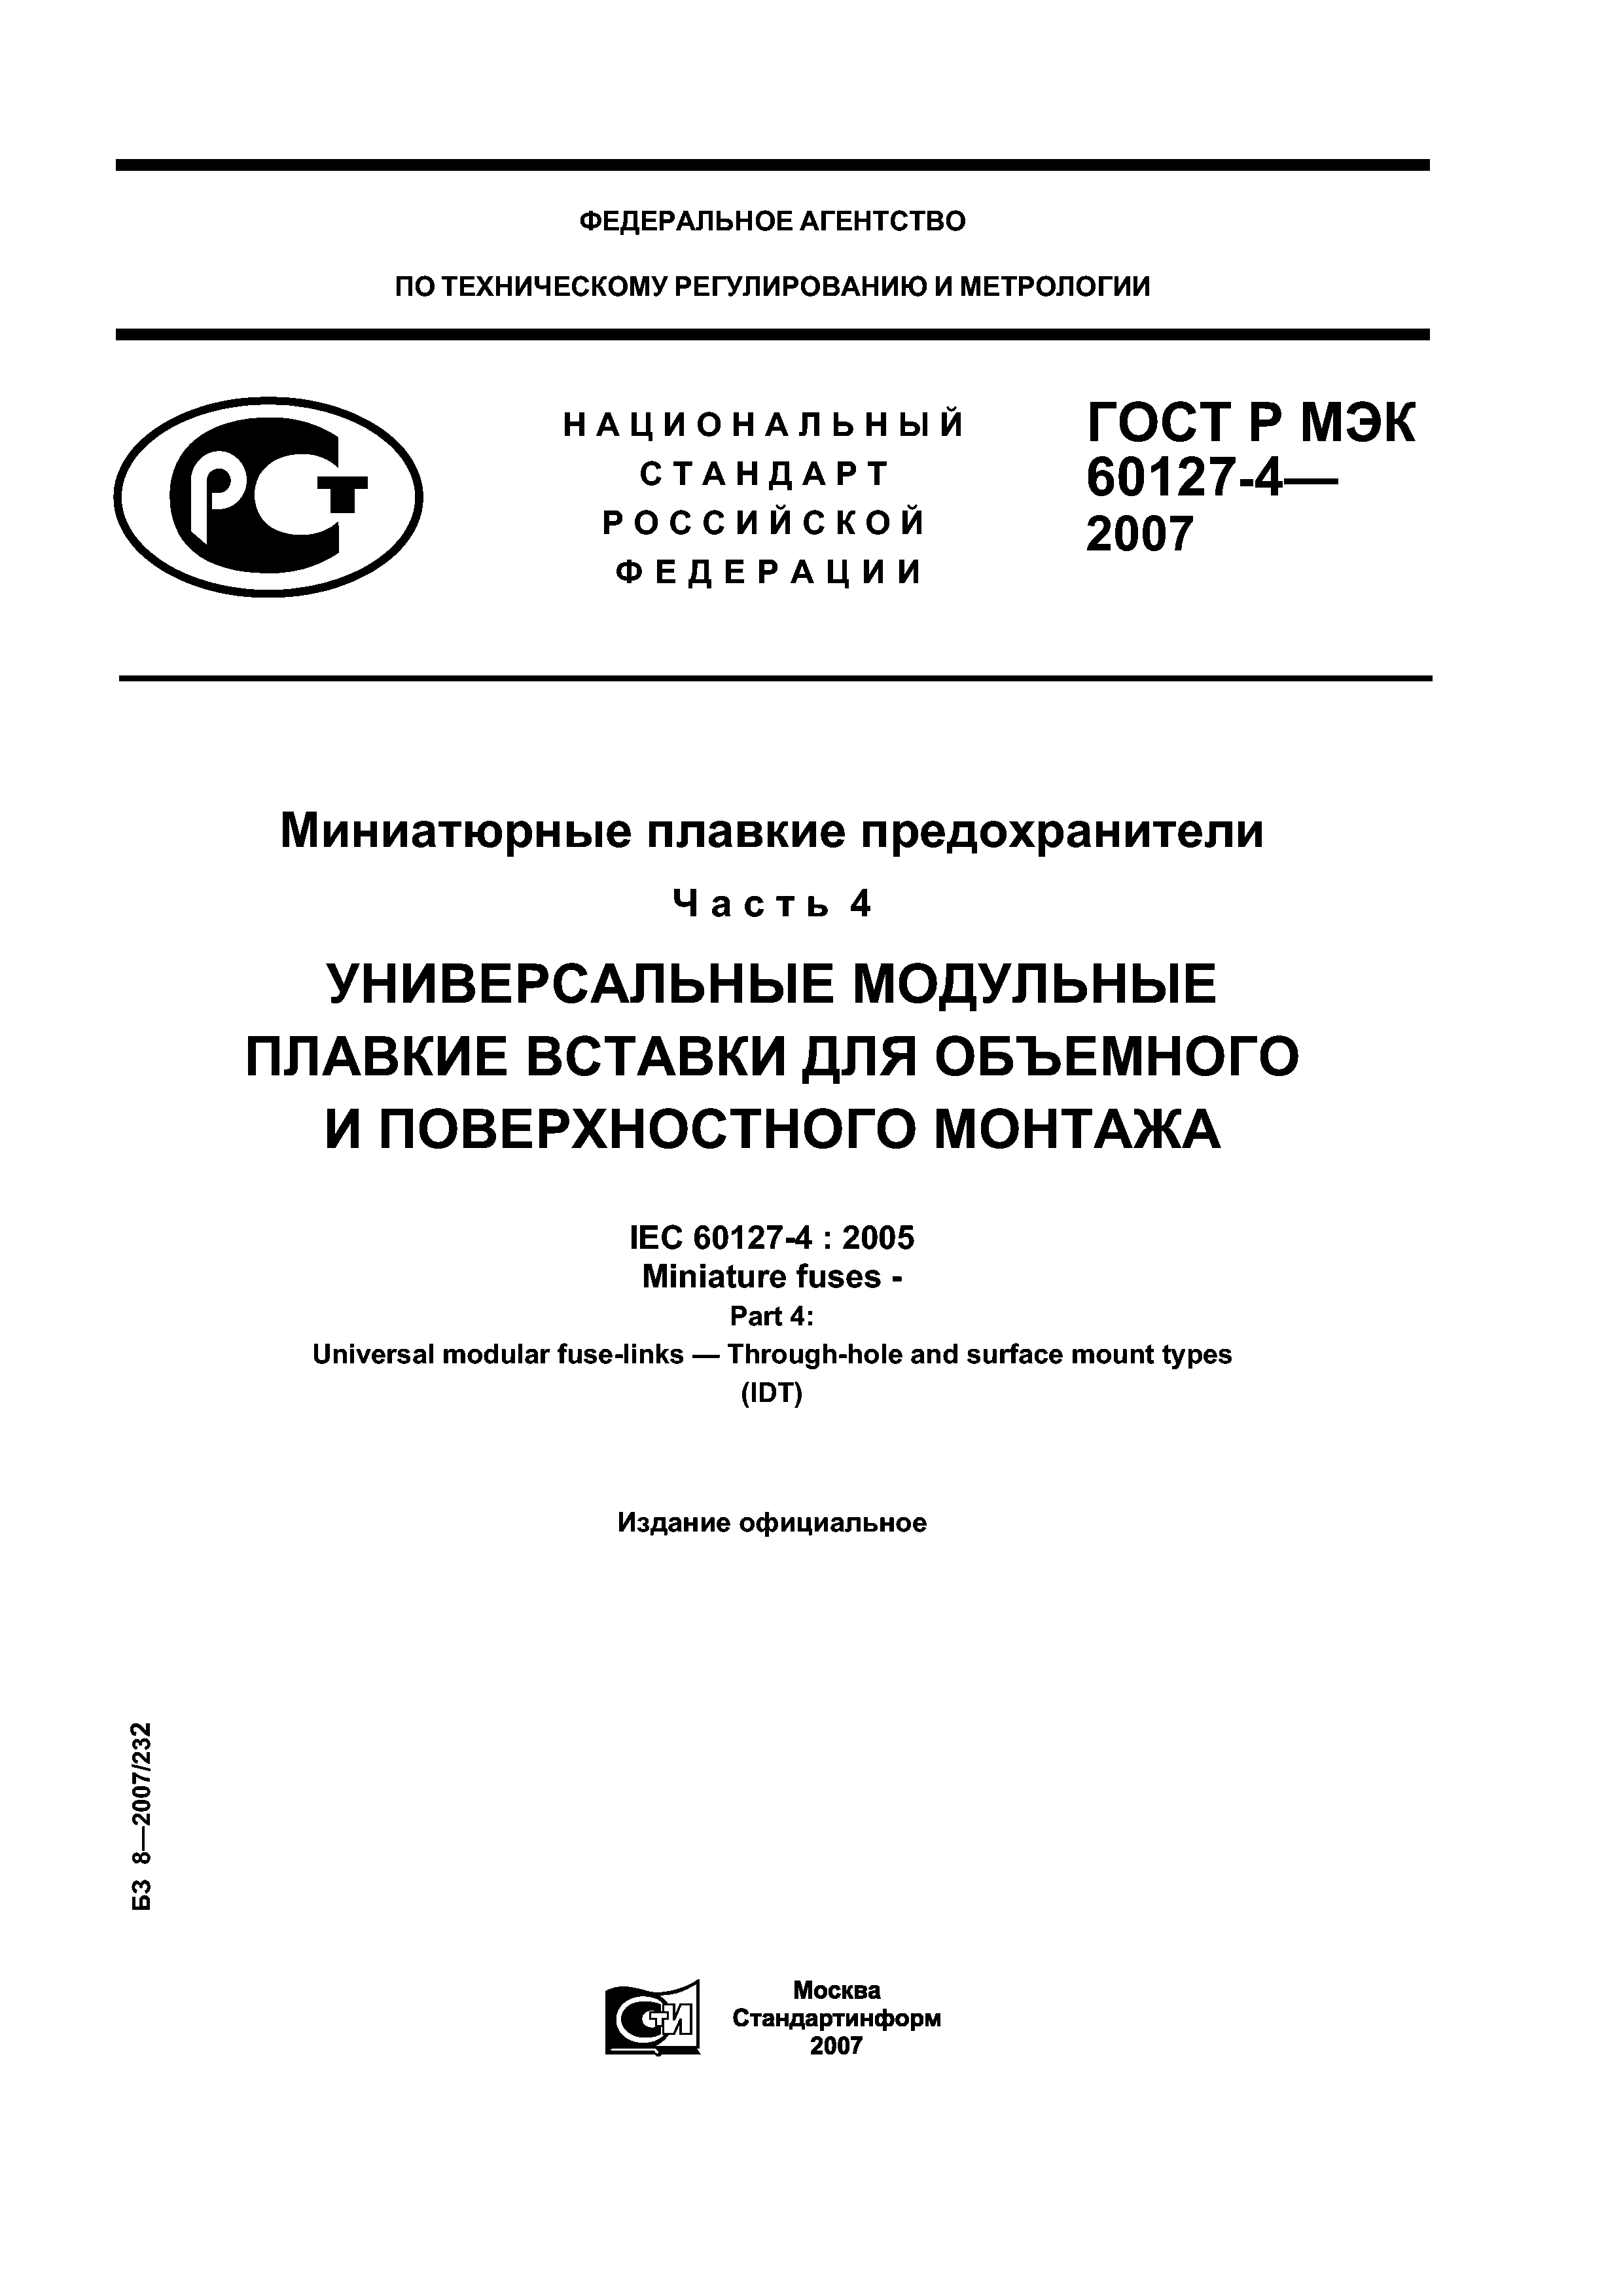 ГОСТ Р МЭК 60127-4-2007